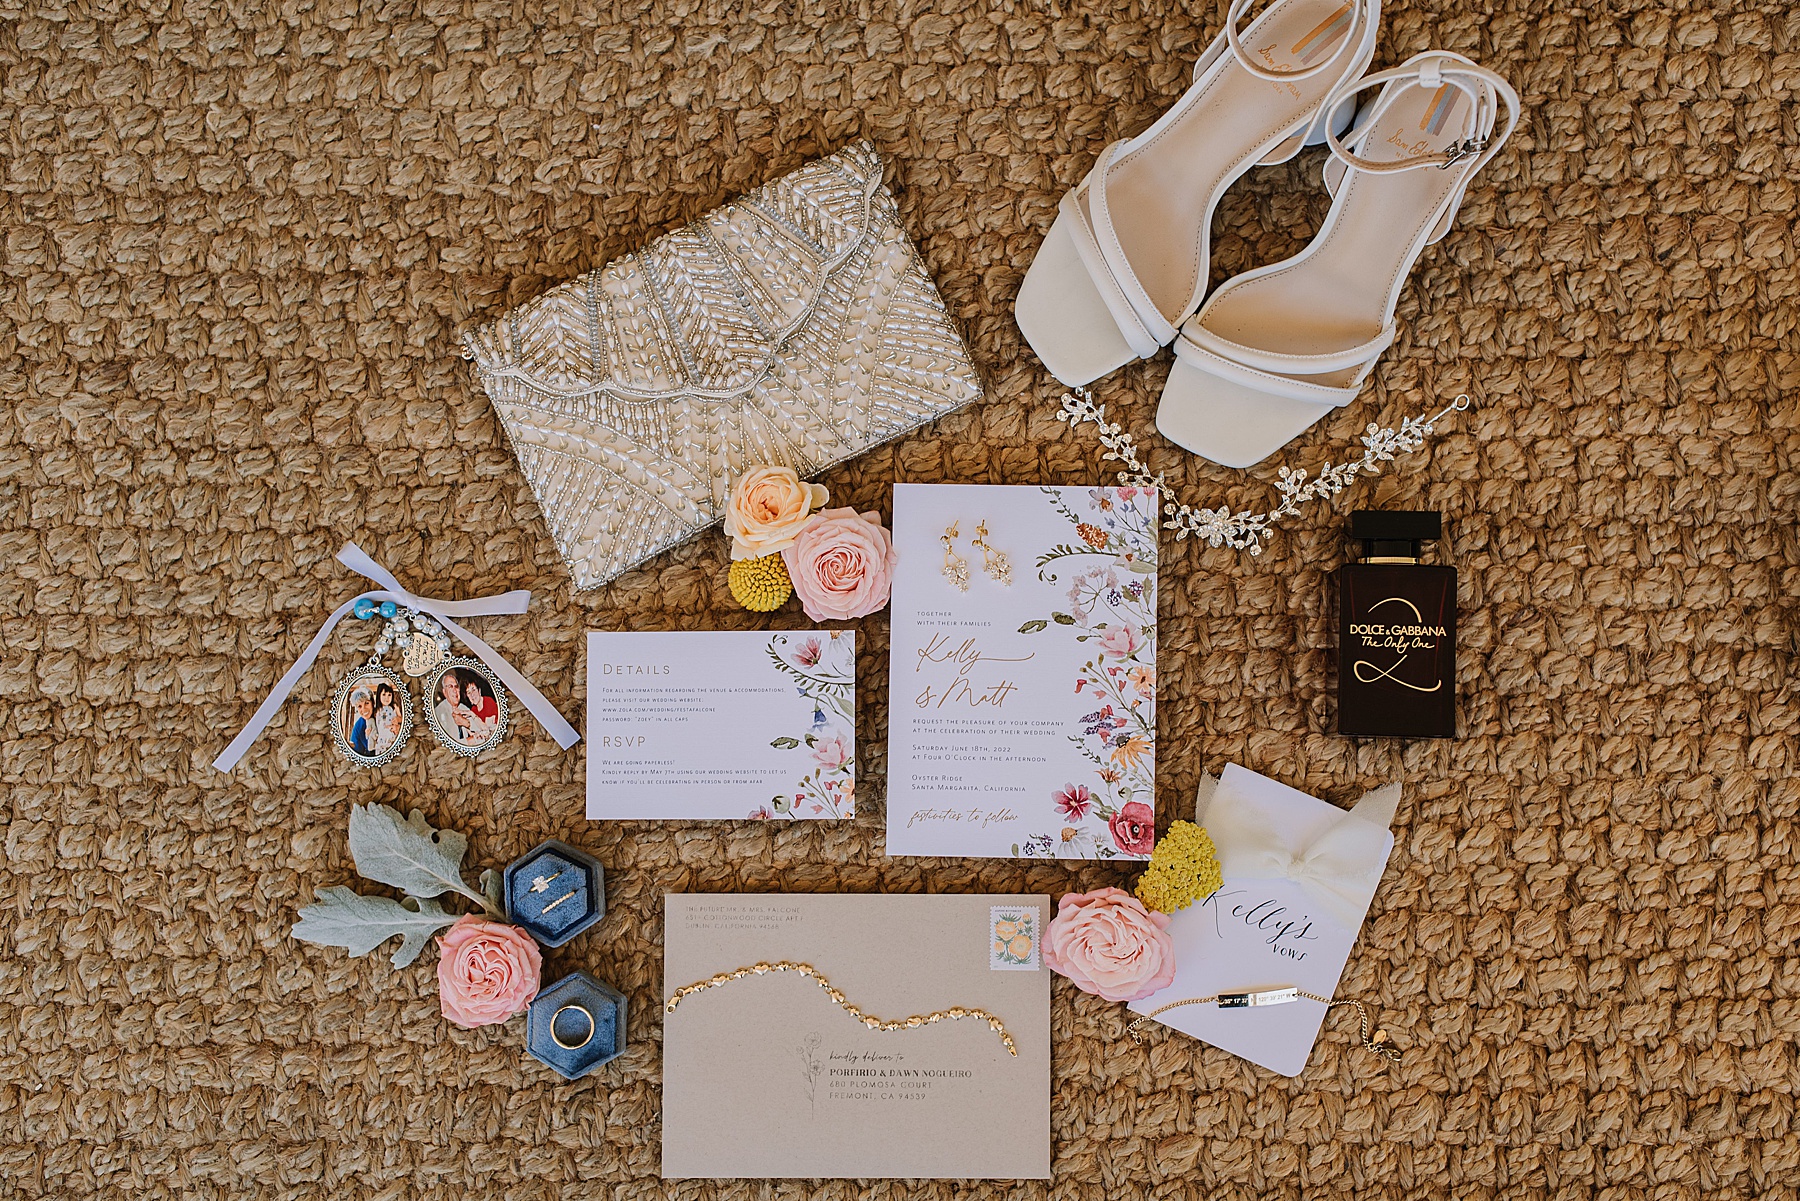 Wedding day details from a San Luis Obispo wedding including wedding heels, wedding invitations, and wedding jewelry.